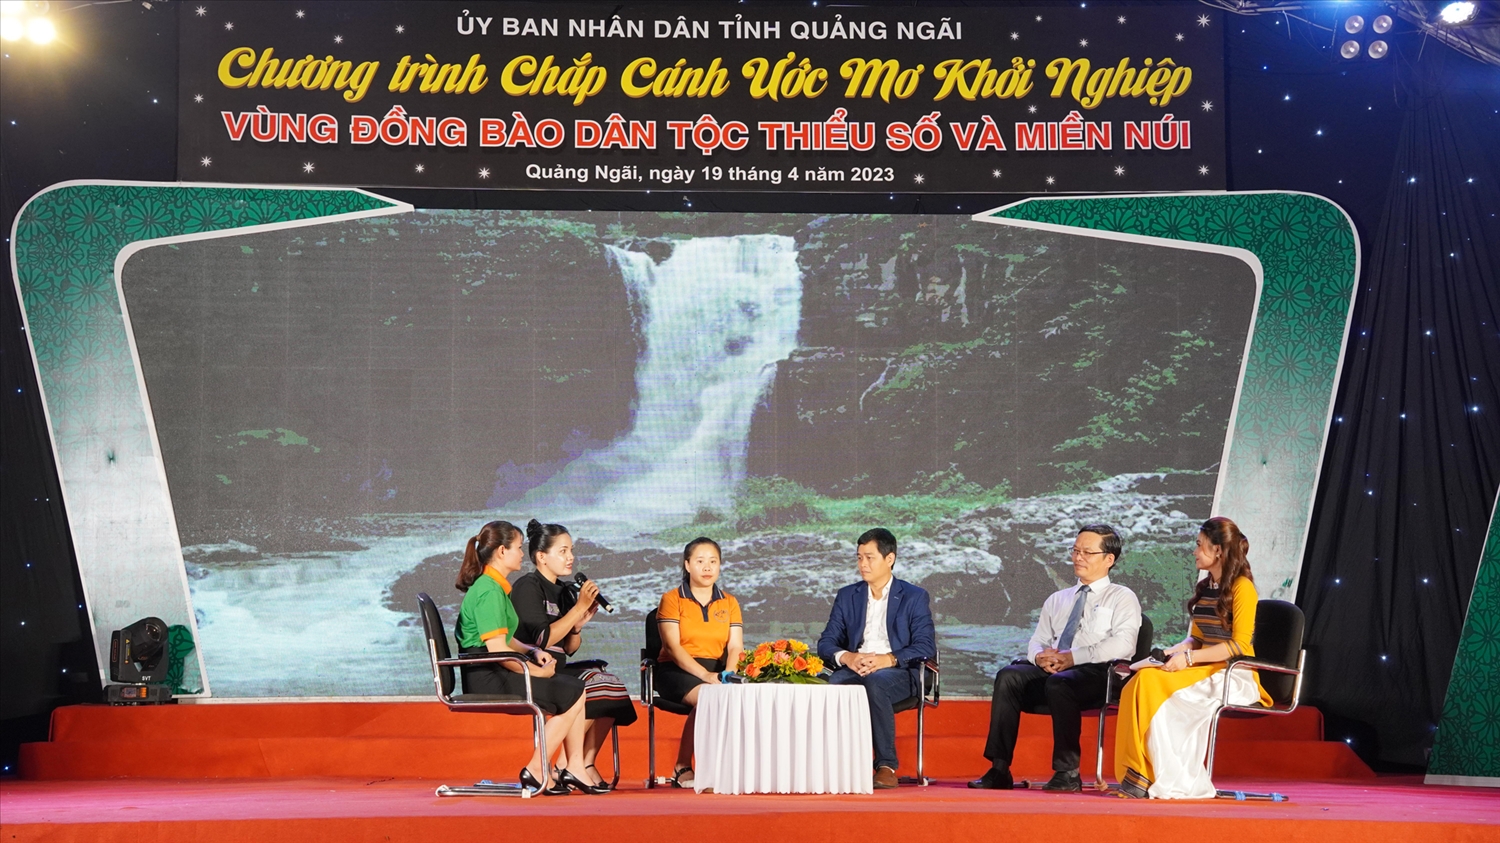 Giao lưu, chia sẻ những kinh nghiệm về quá trình khởi nghiệp trong Chương trình “Chắp cánh ước mơ khởi nghiệp ở vùng đồng bào DTTS và miền núi” diễn ra tối ngày 19/4/2023 tại Quảng Ngãi.